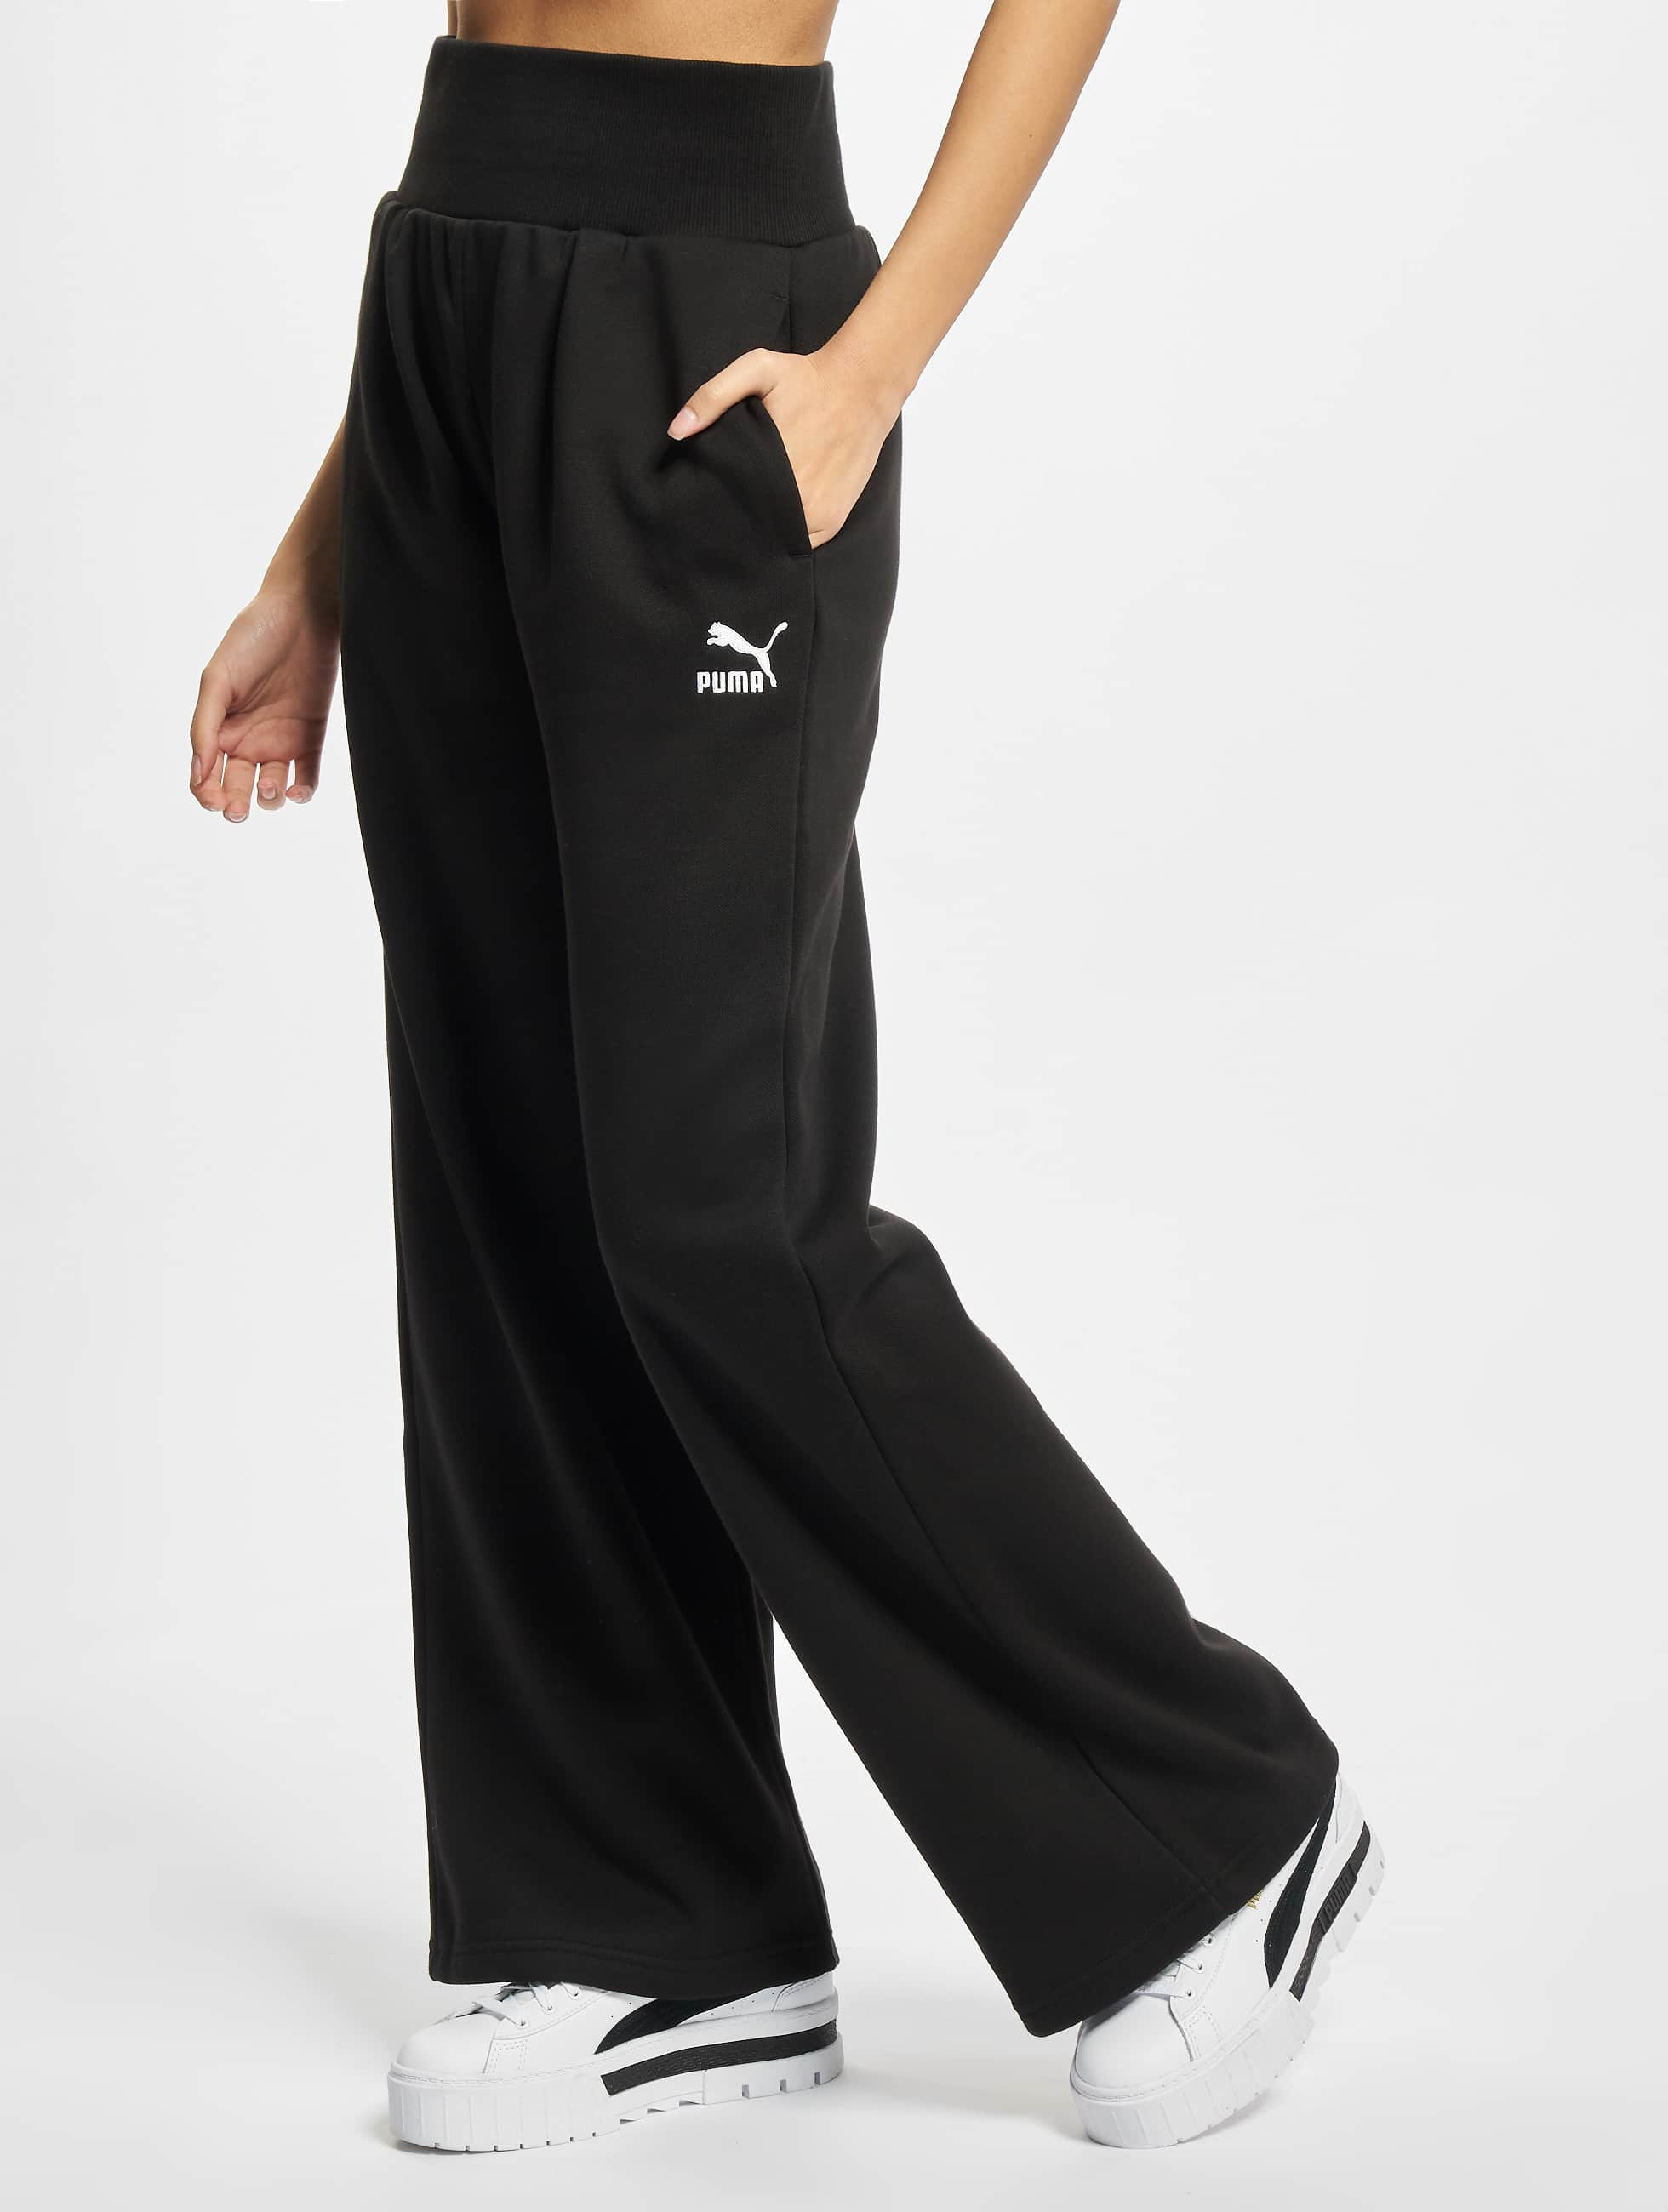 Bild von Puma Frauen Jogginghose Fashion Wide Leg FL in schwarz